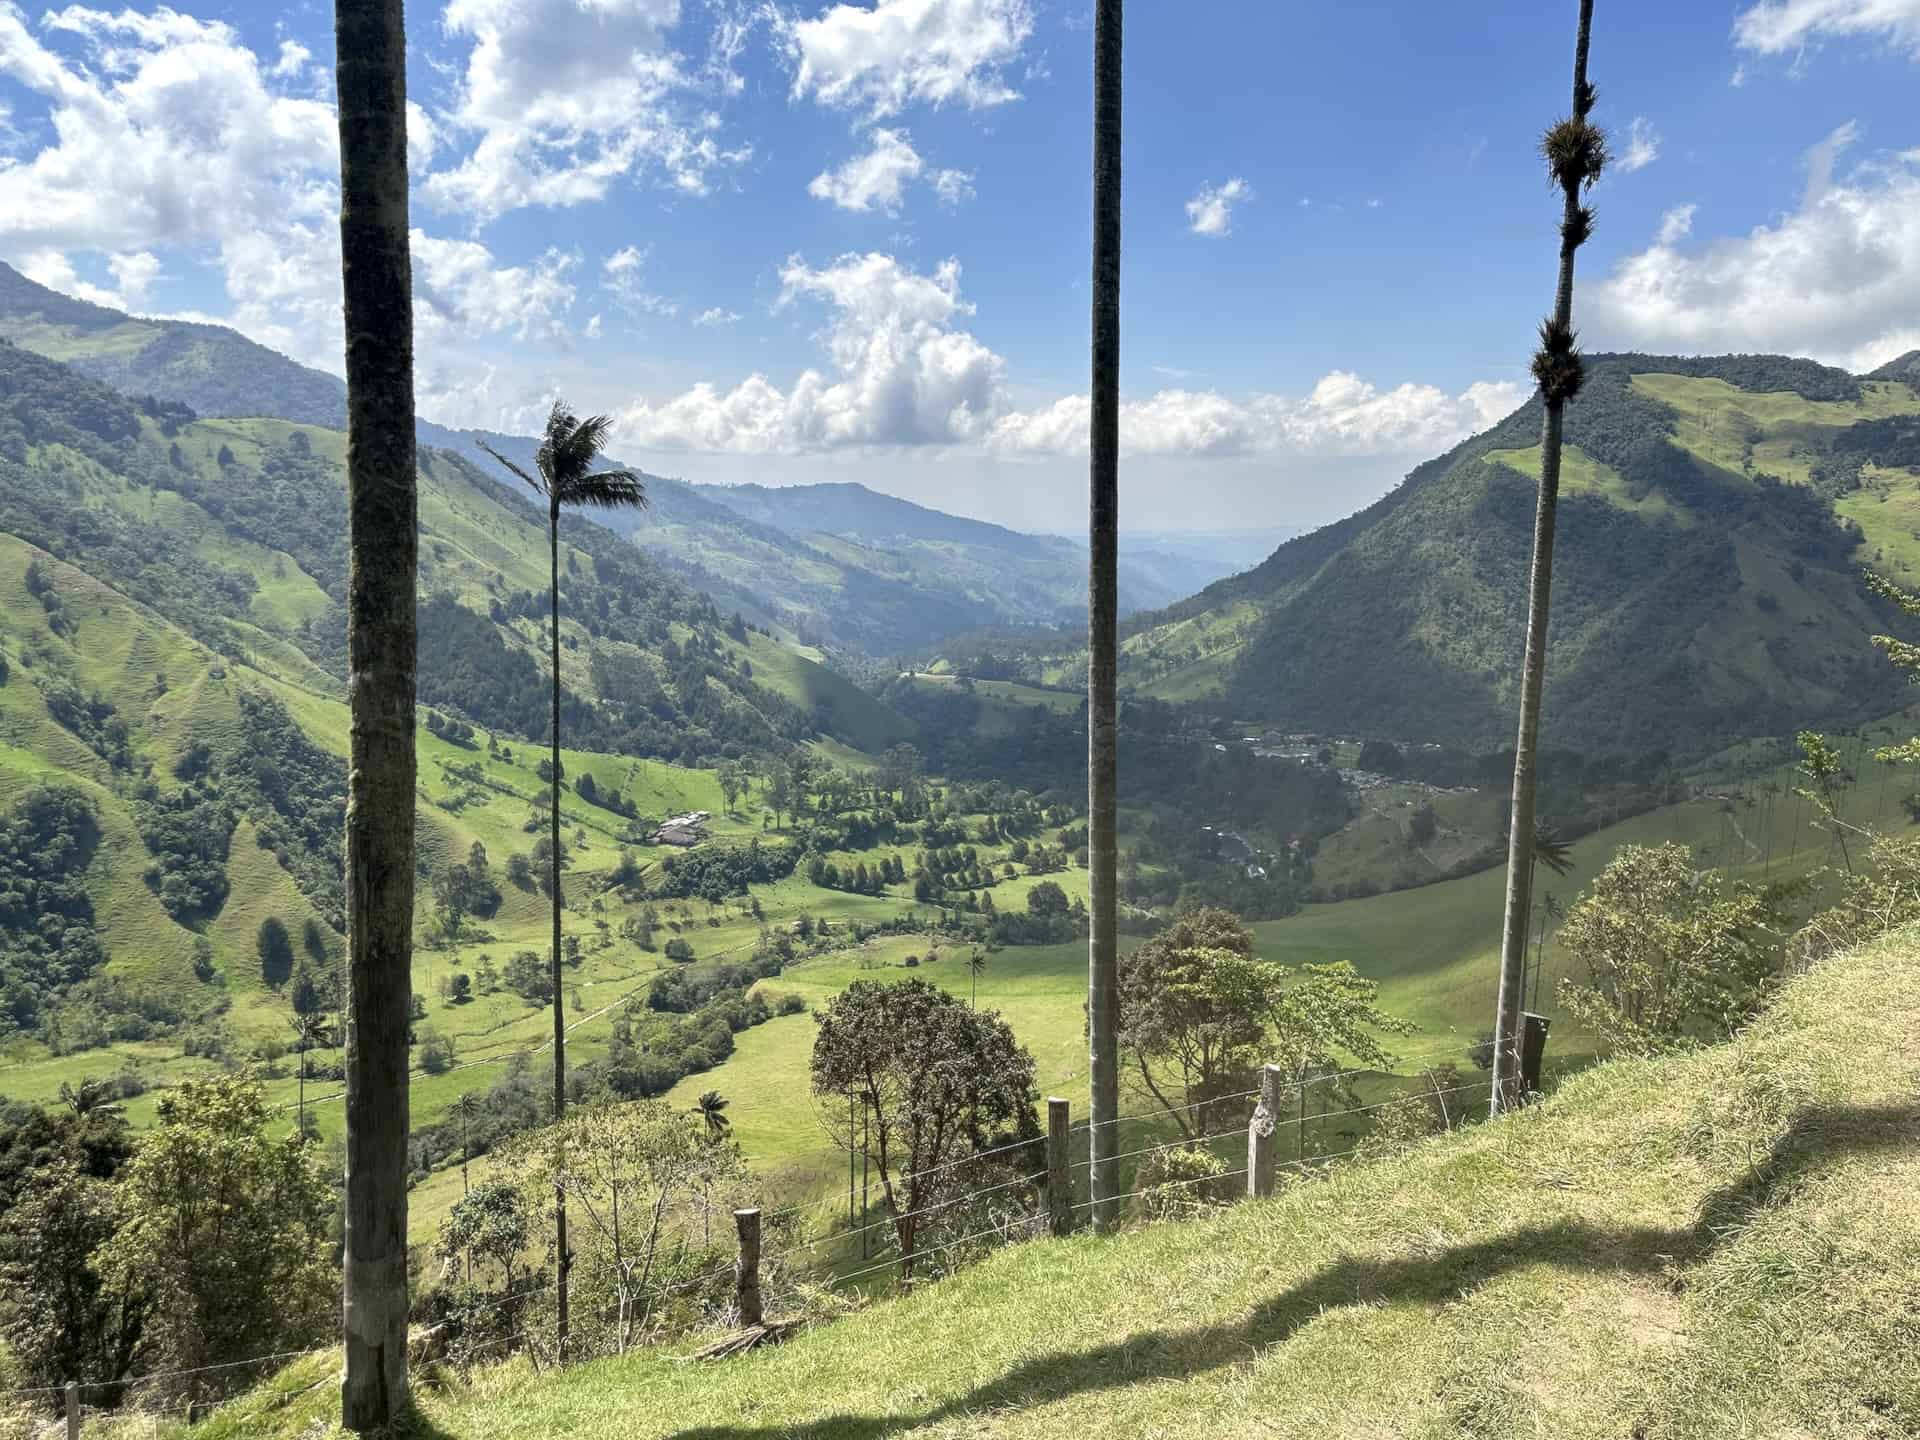 Looking down towards Finca El Portón at Mirador #2 at Cocora Valley in Quindío, Colombia